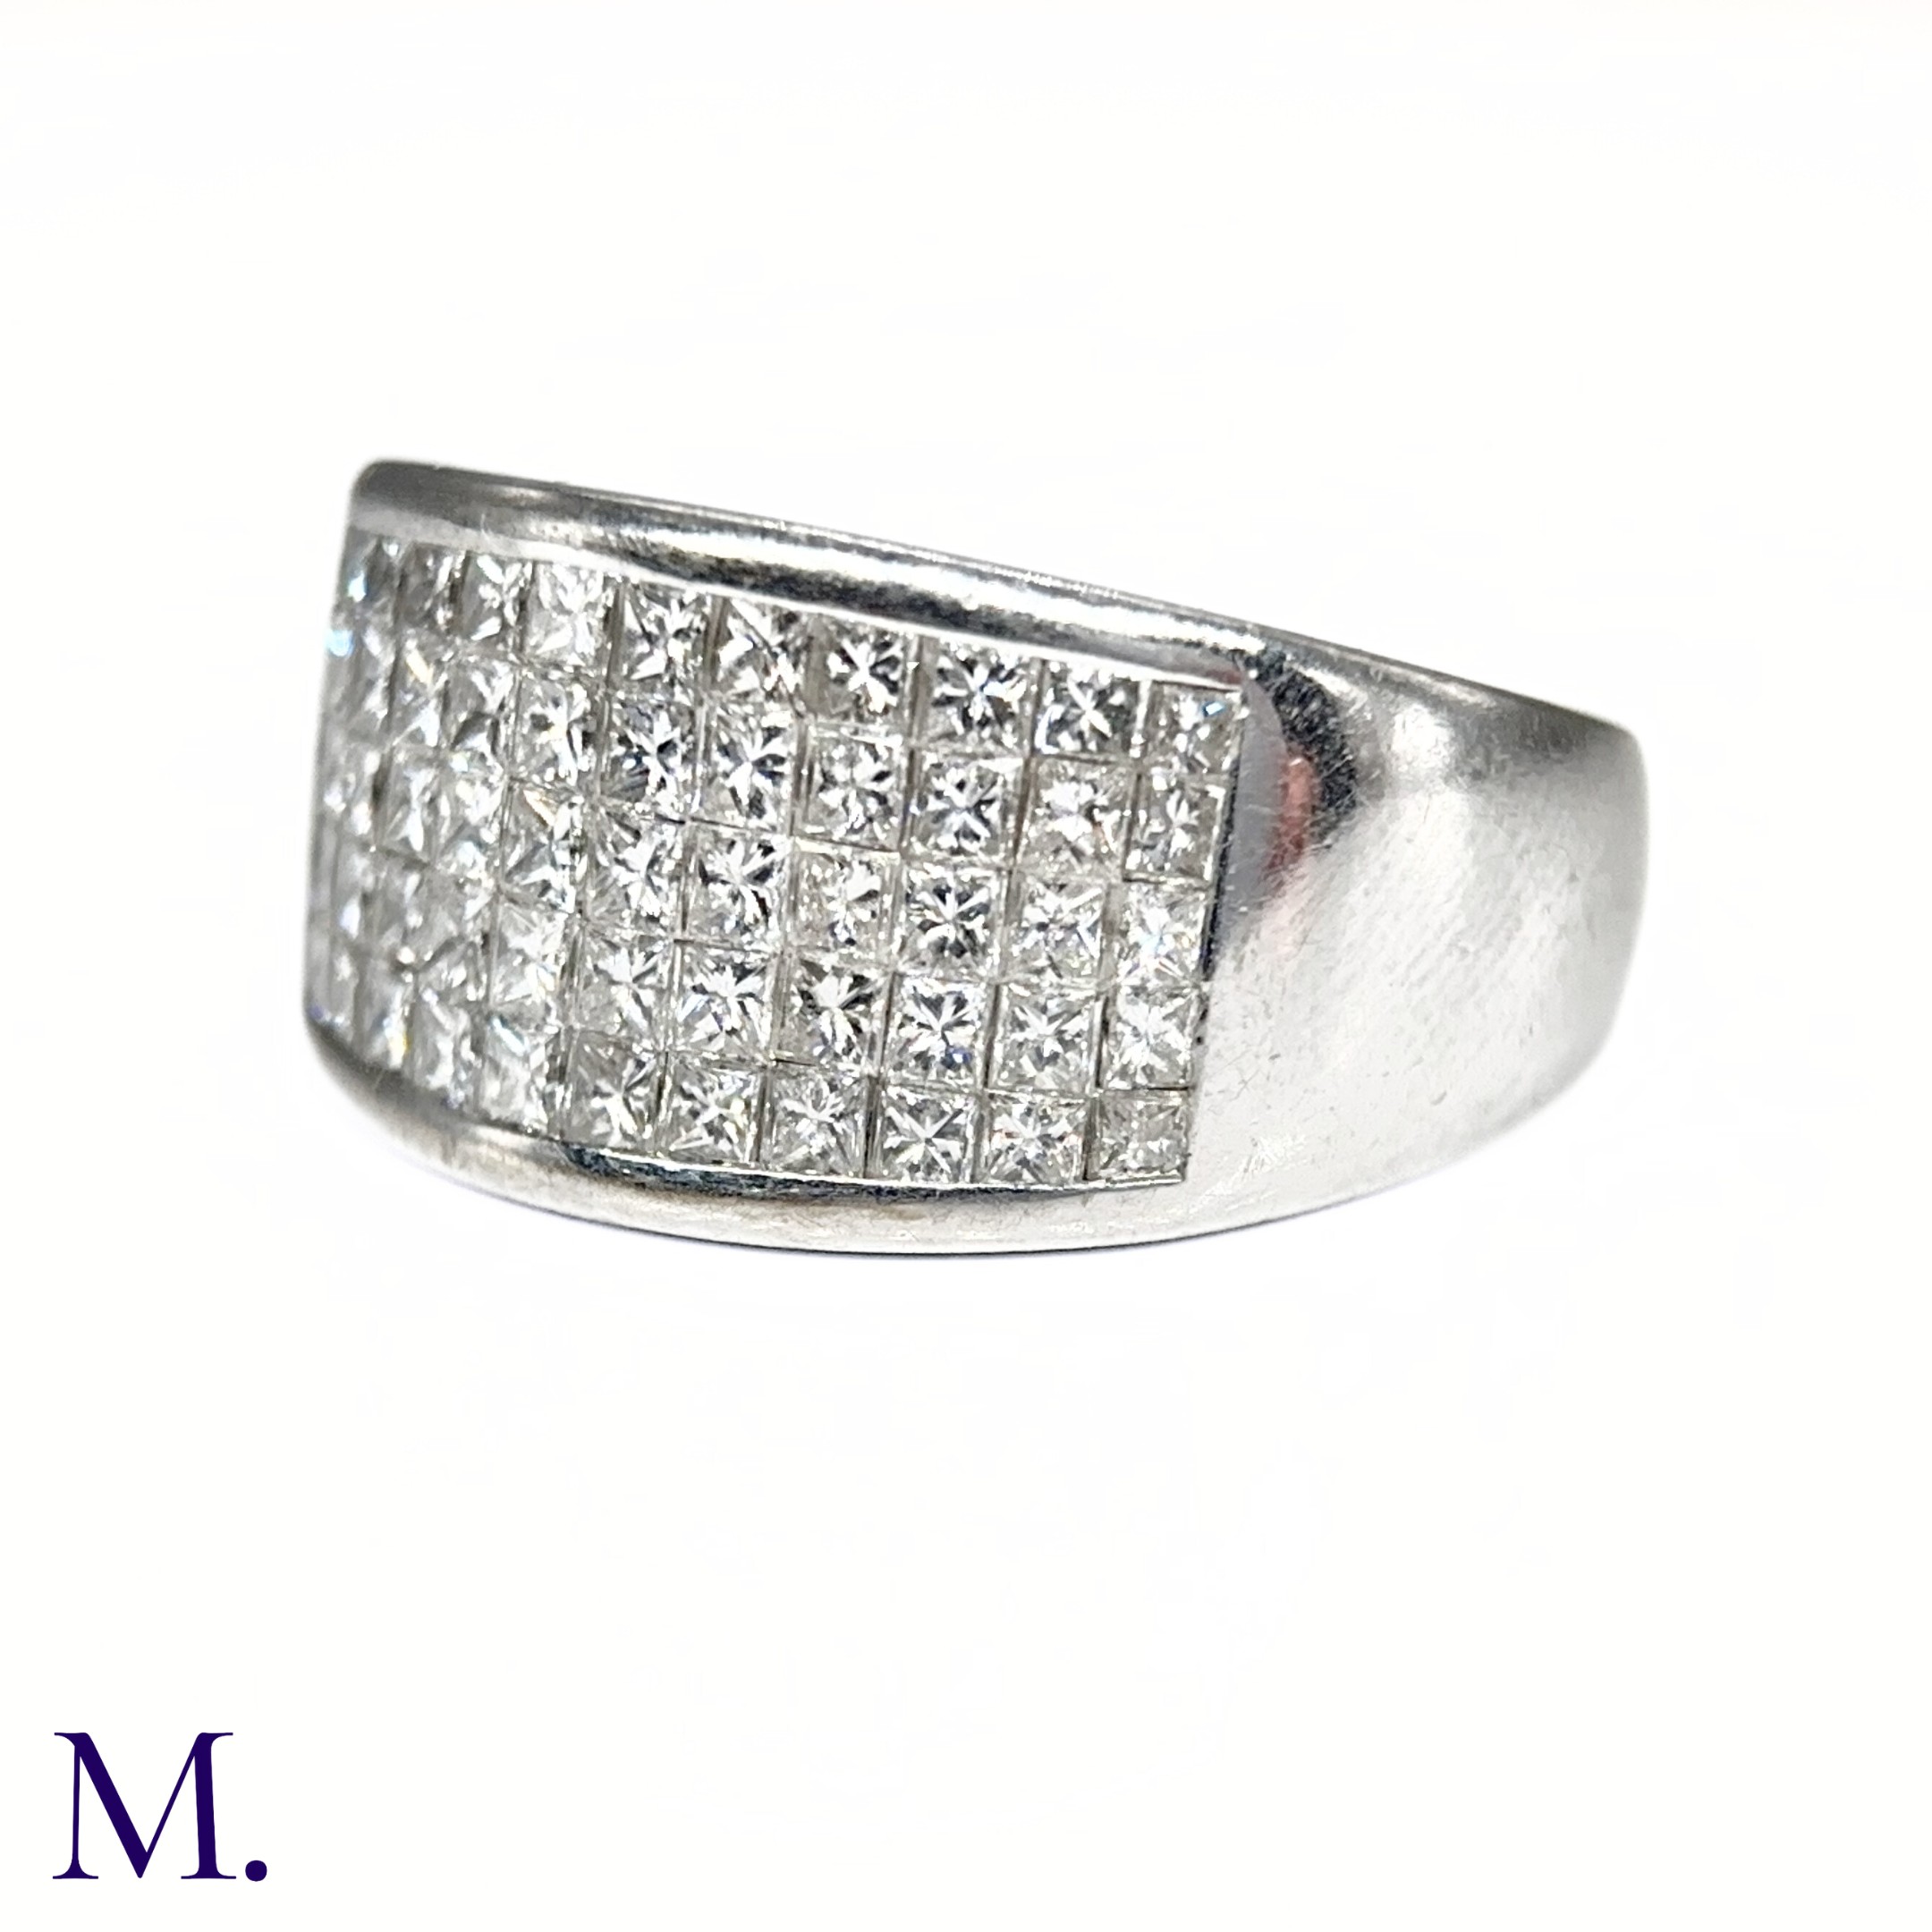 An 5-Row Asscher-cut Diamond Ring - Image 7 of 7